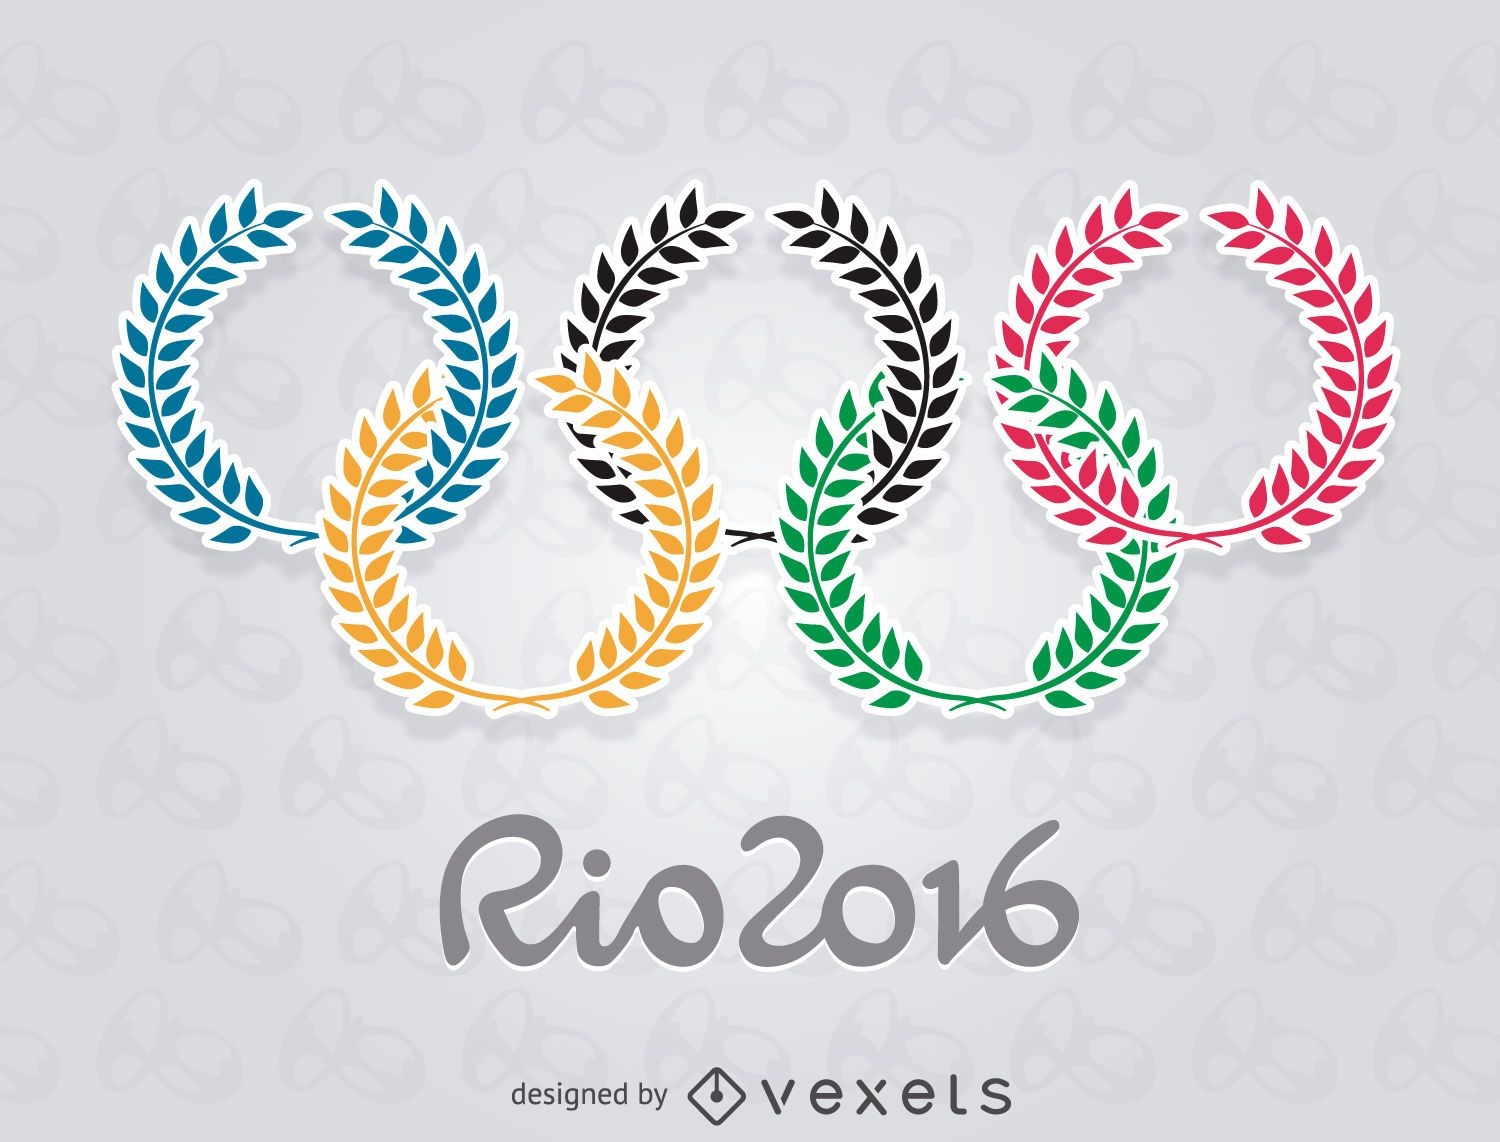 Olimp?adas Rio 2016 - Oliveiras